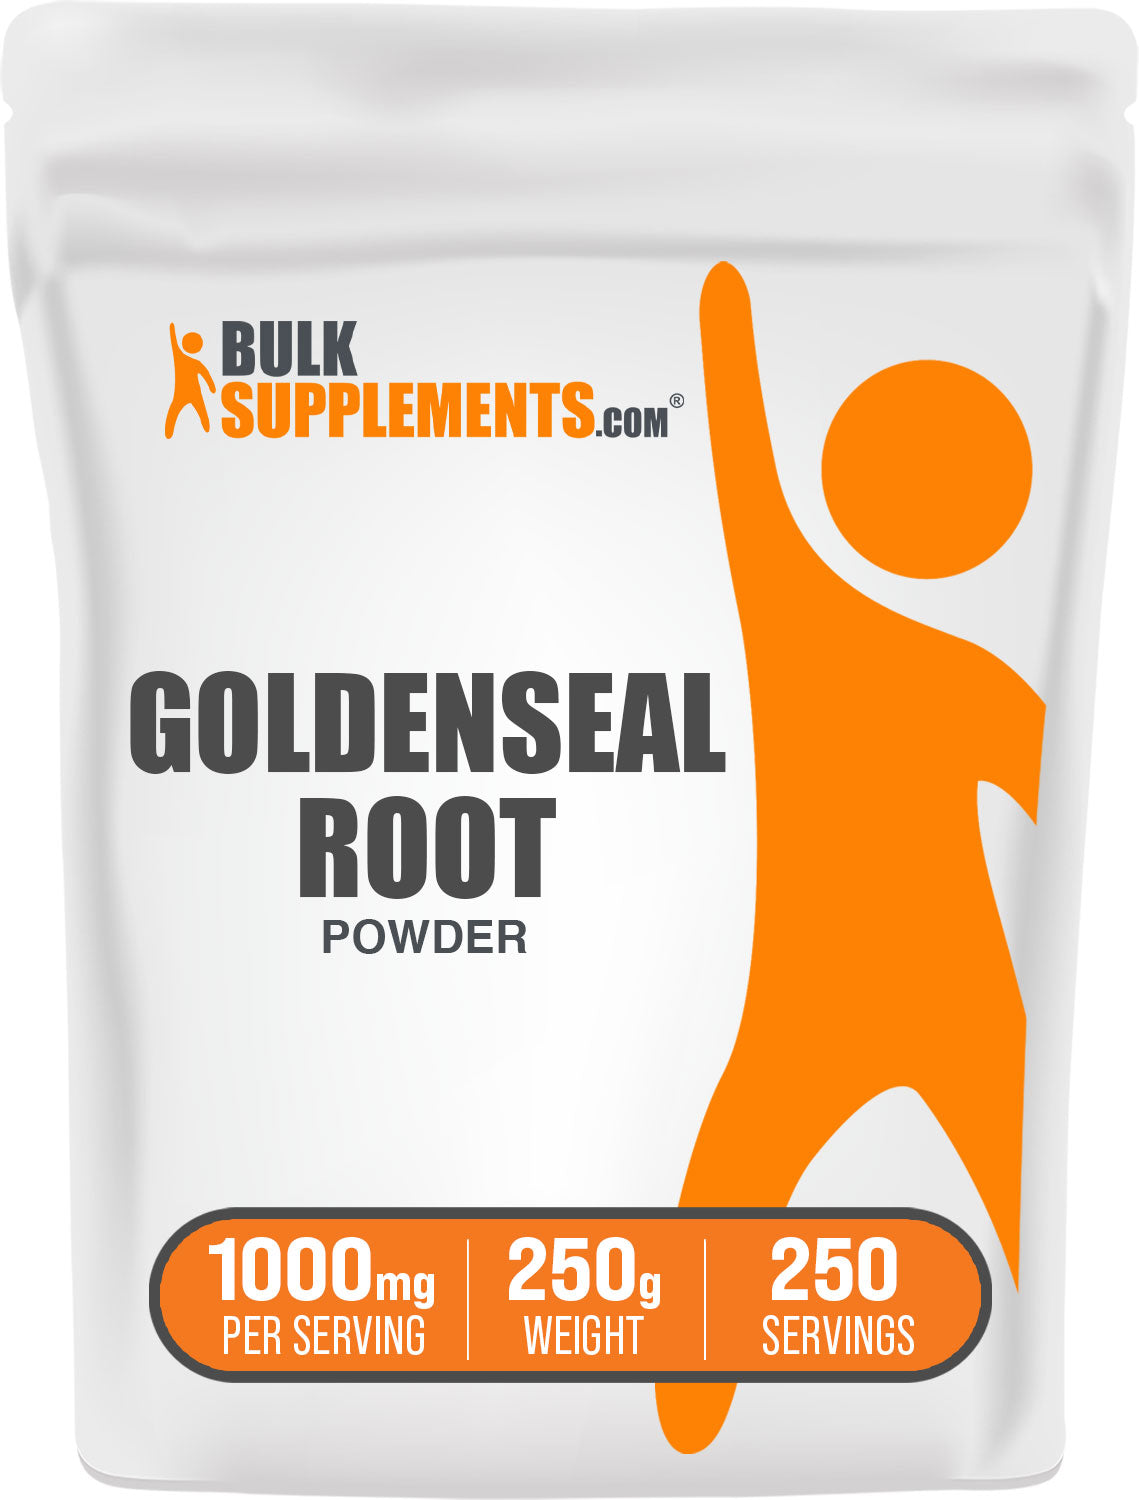 Goldenseal root powder bag image 250g